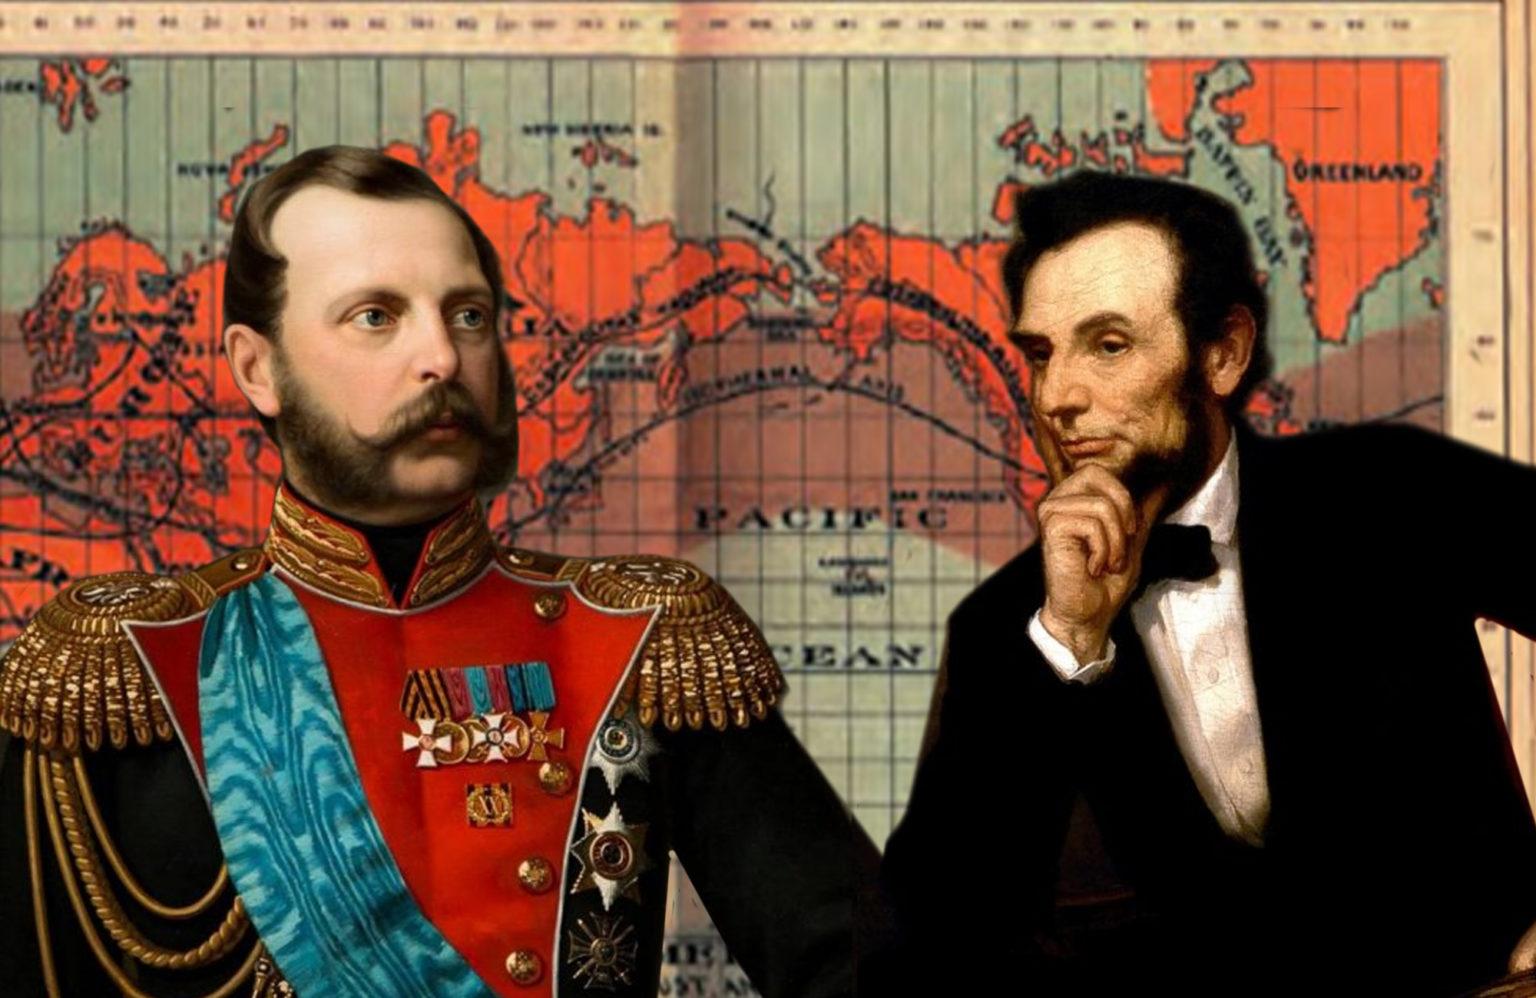 Россия 2 продажа. 1867 – Россия продала Аляску США.